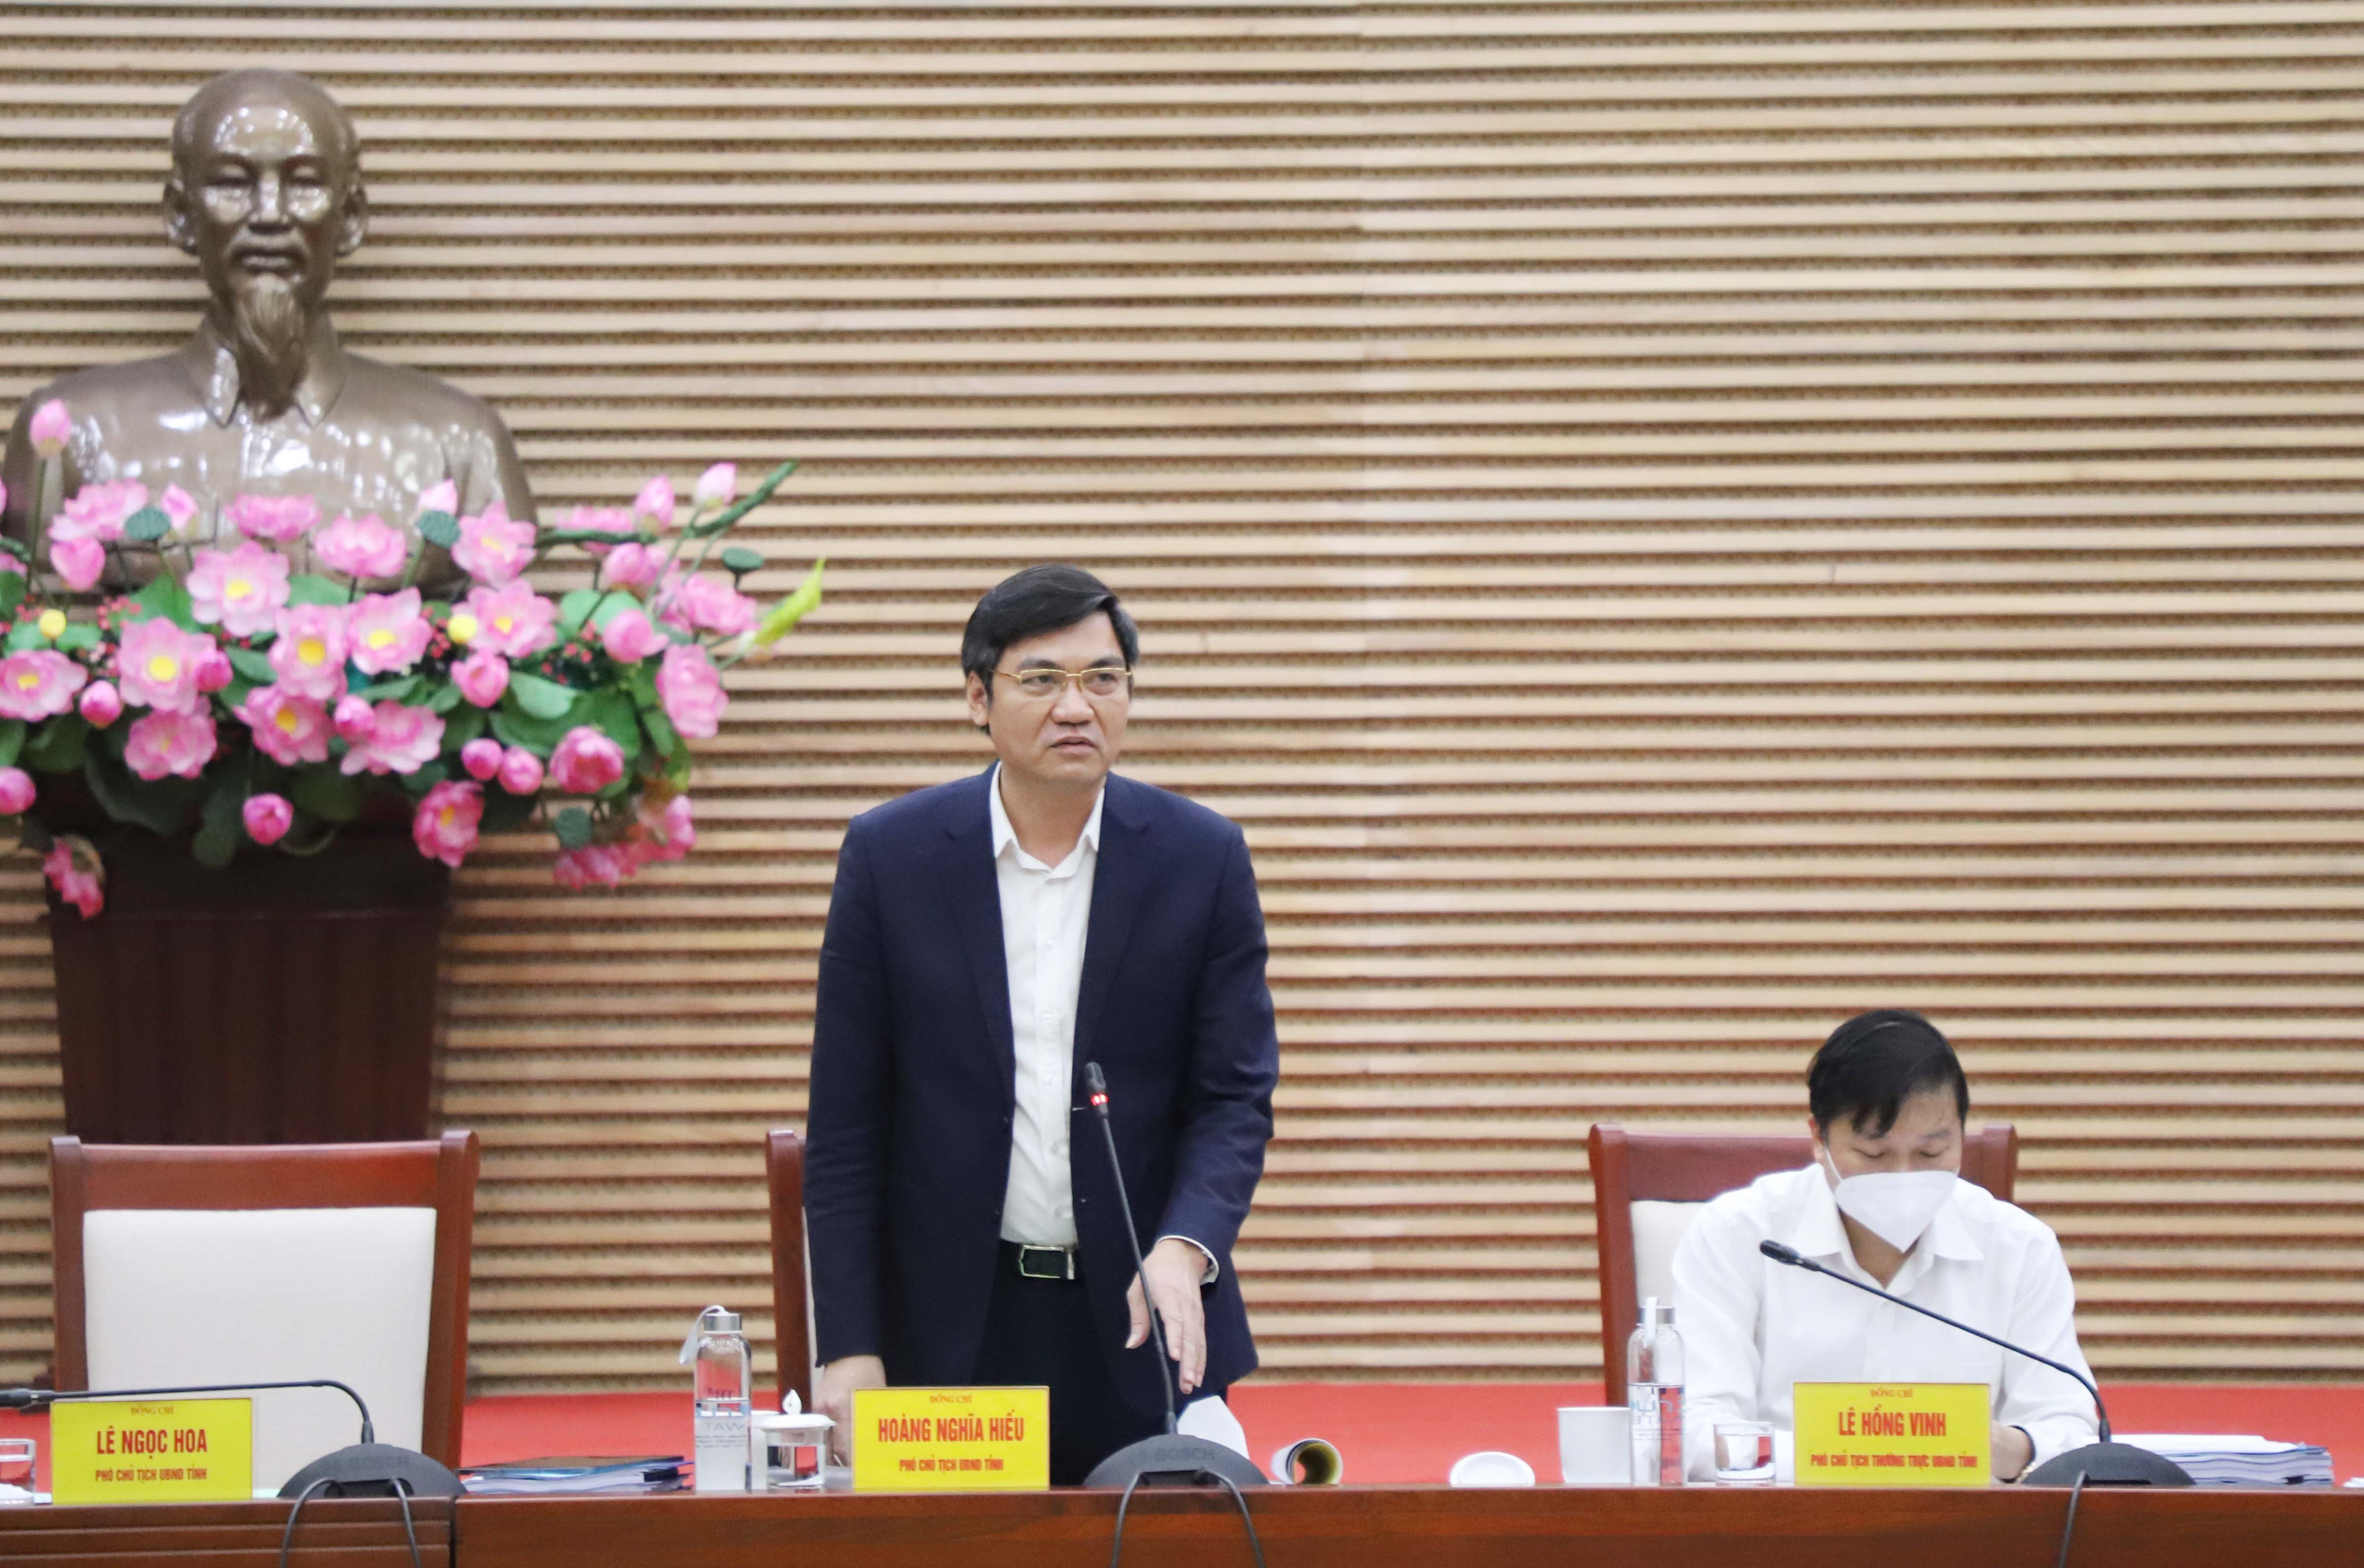 Đồng chí Hoàng Nghĩa Hiếu - Phó Chủ tịch UBND tỉnh đóng góp ý kiến vào dự thảo Nghị quyết. Ảnh: Phạm Bằng